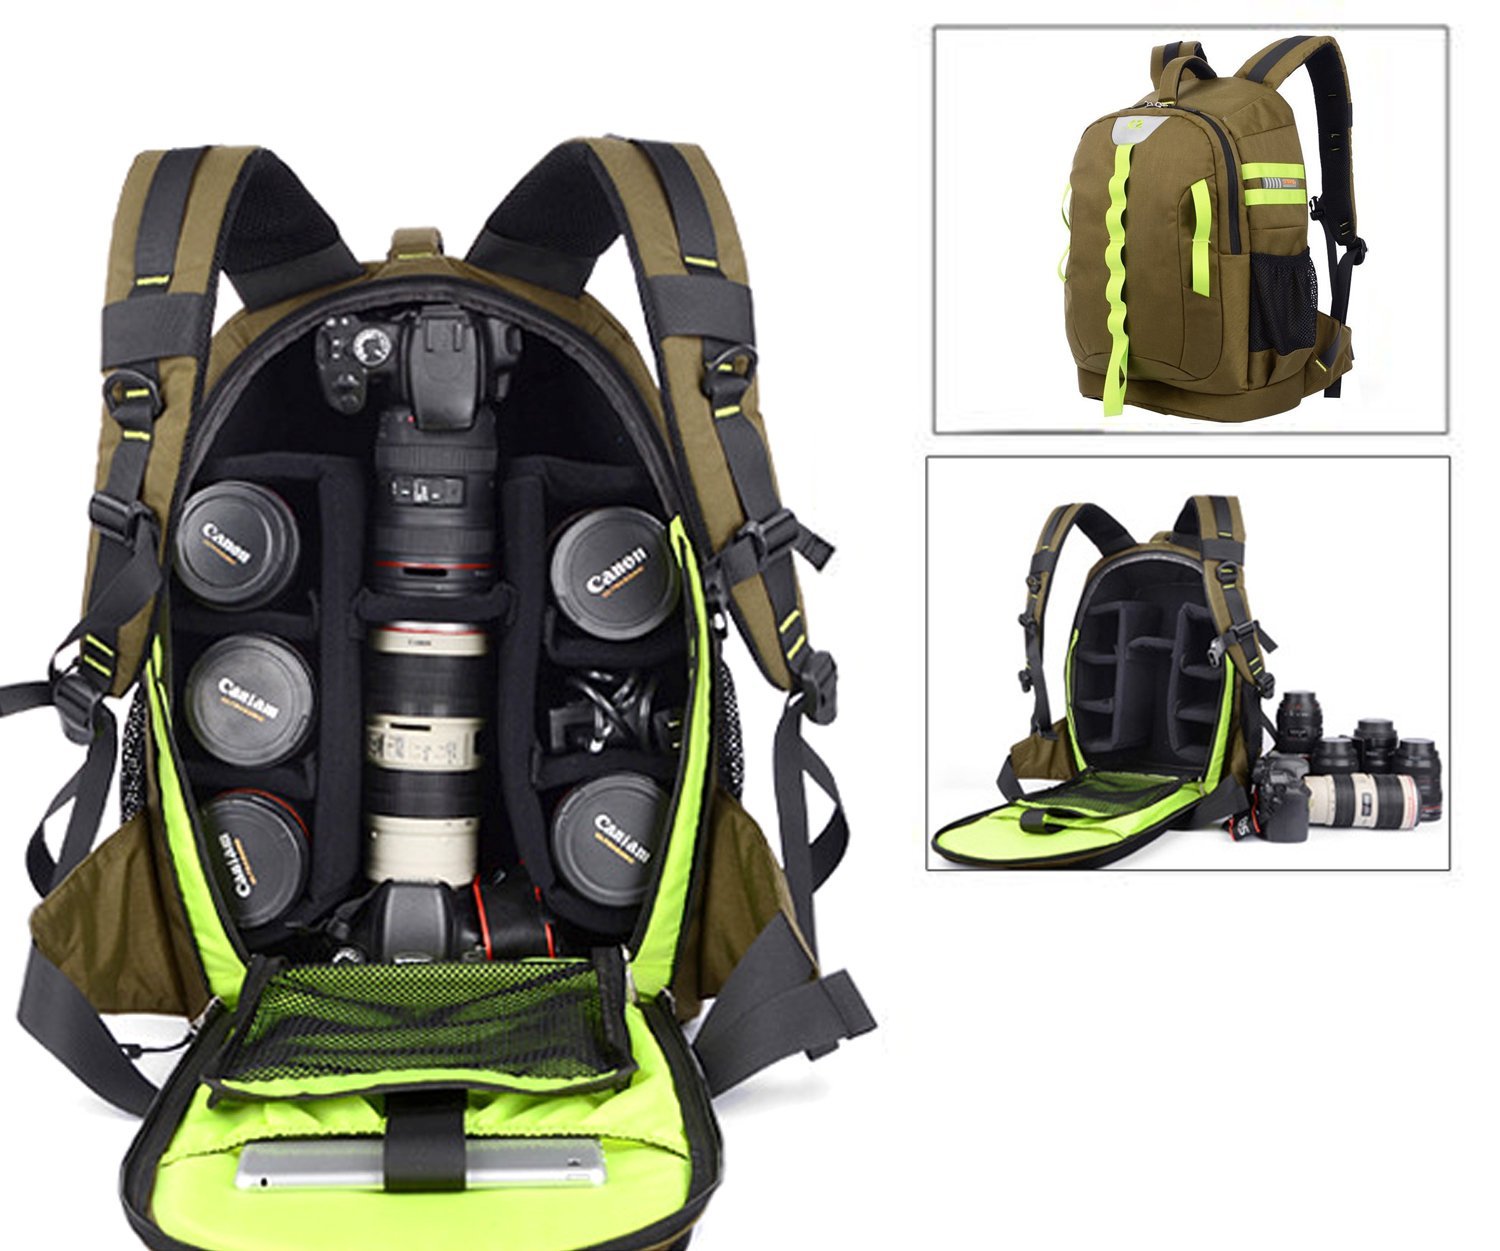 Abonnyc Waterproof Backpack, waterproof camera bags, waterproof camera case, waterproof camera backpack